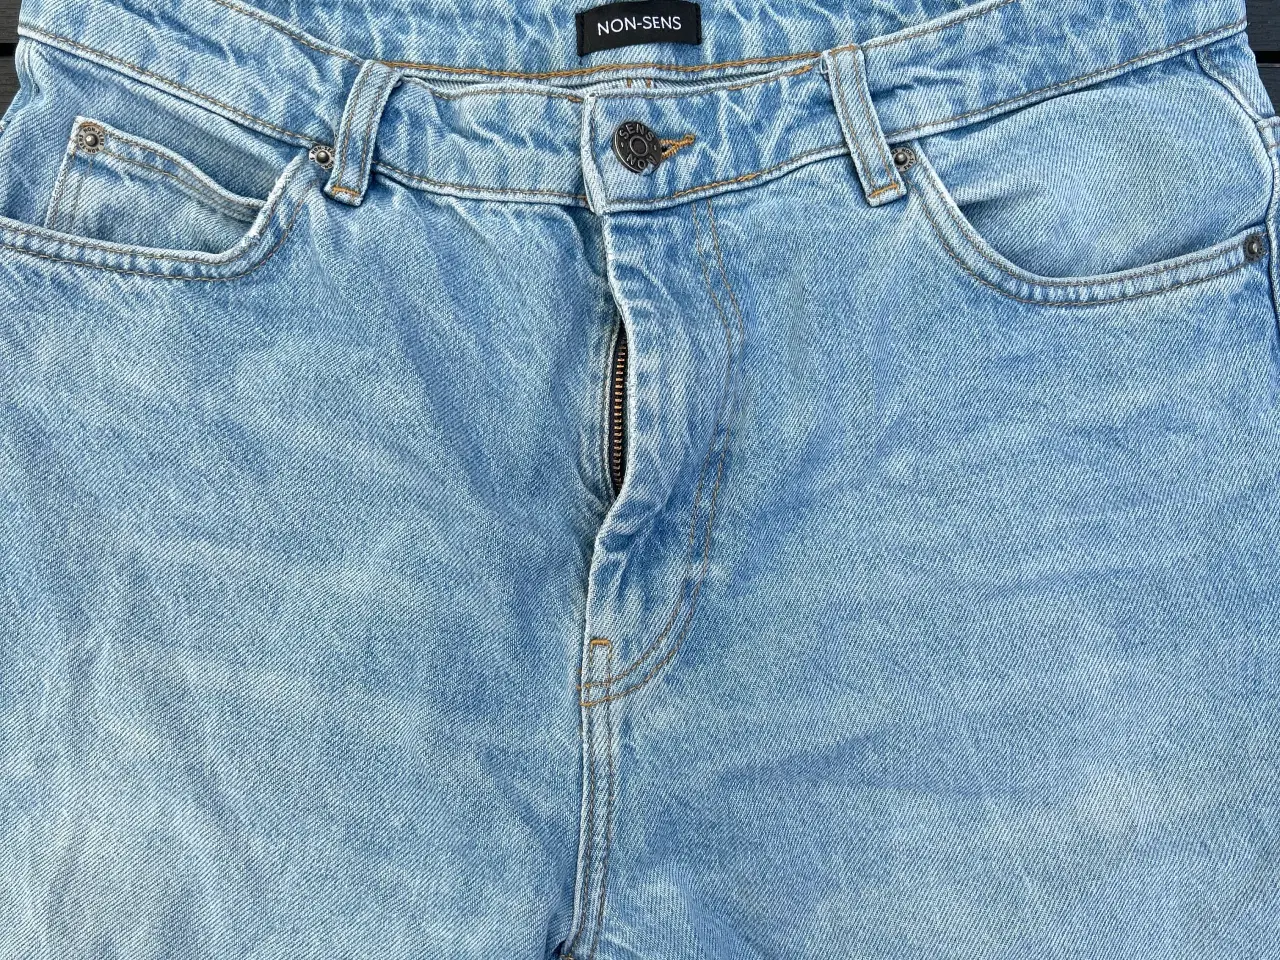 Billede 2 - Non-sens Jeans